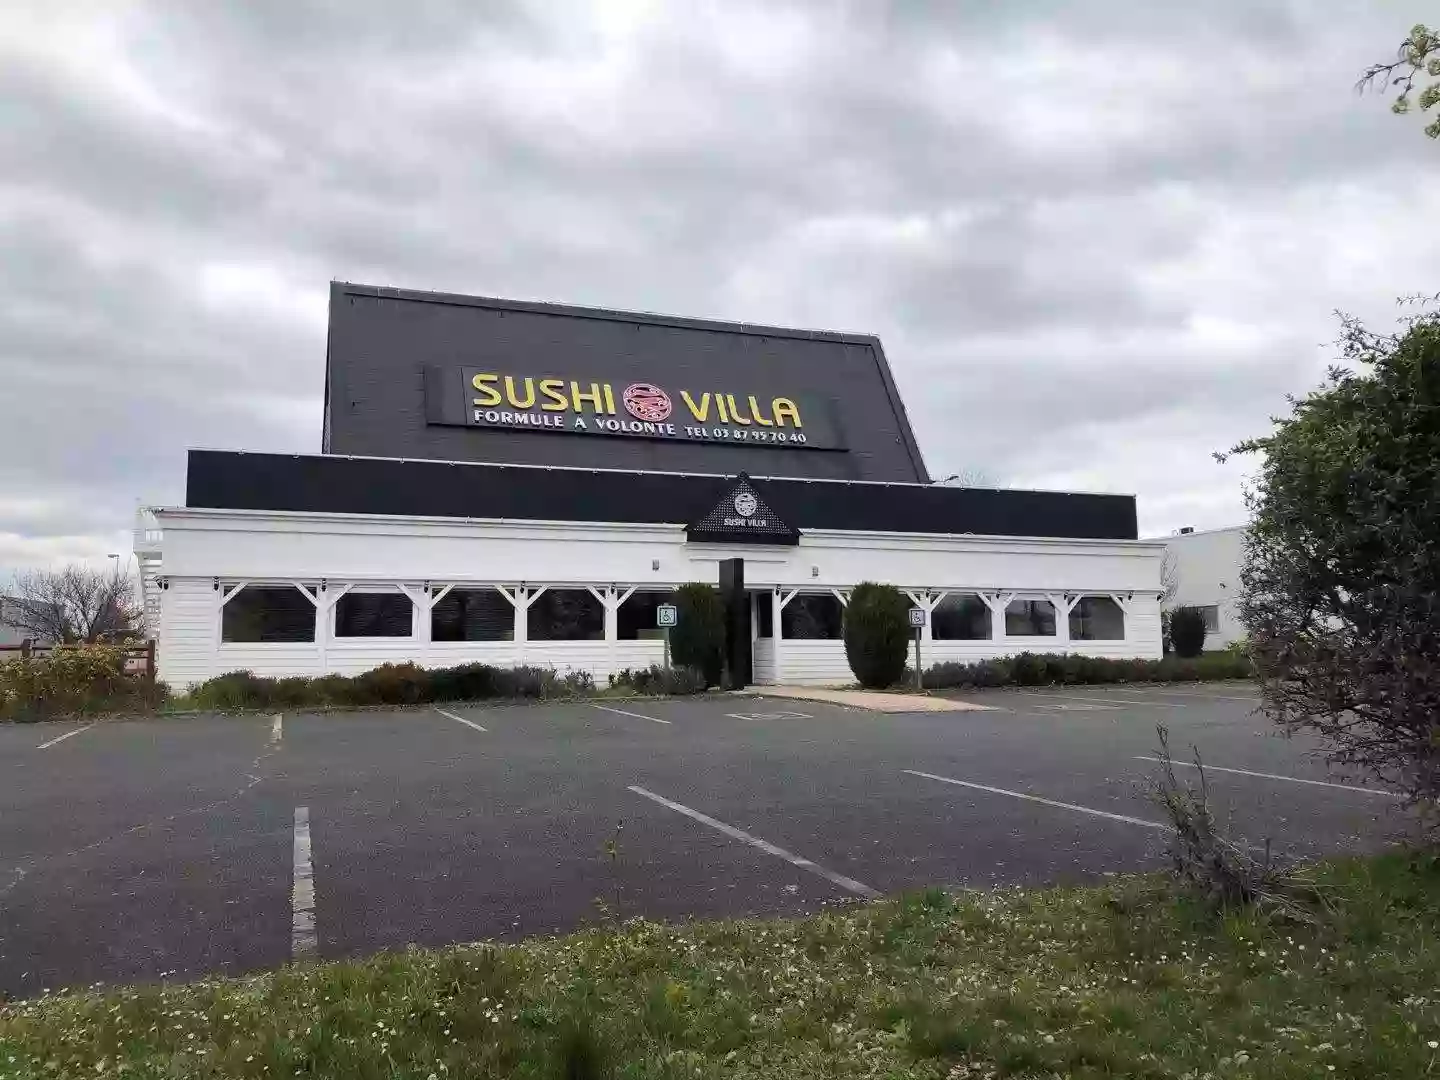 Sushi Villa